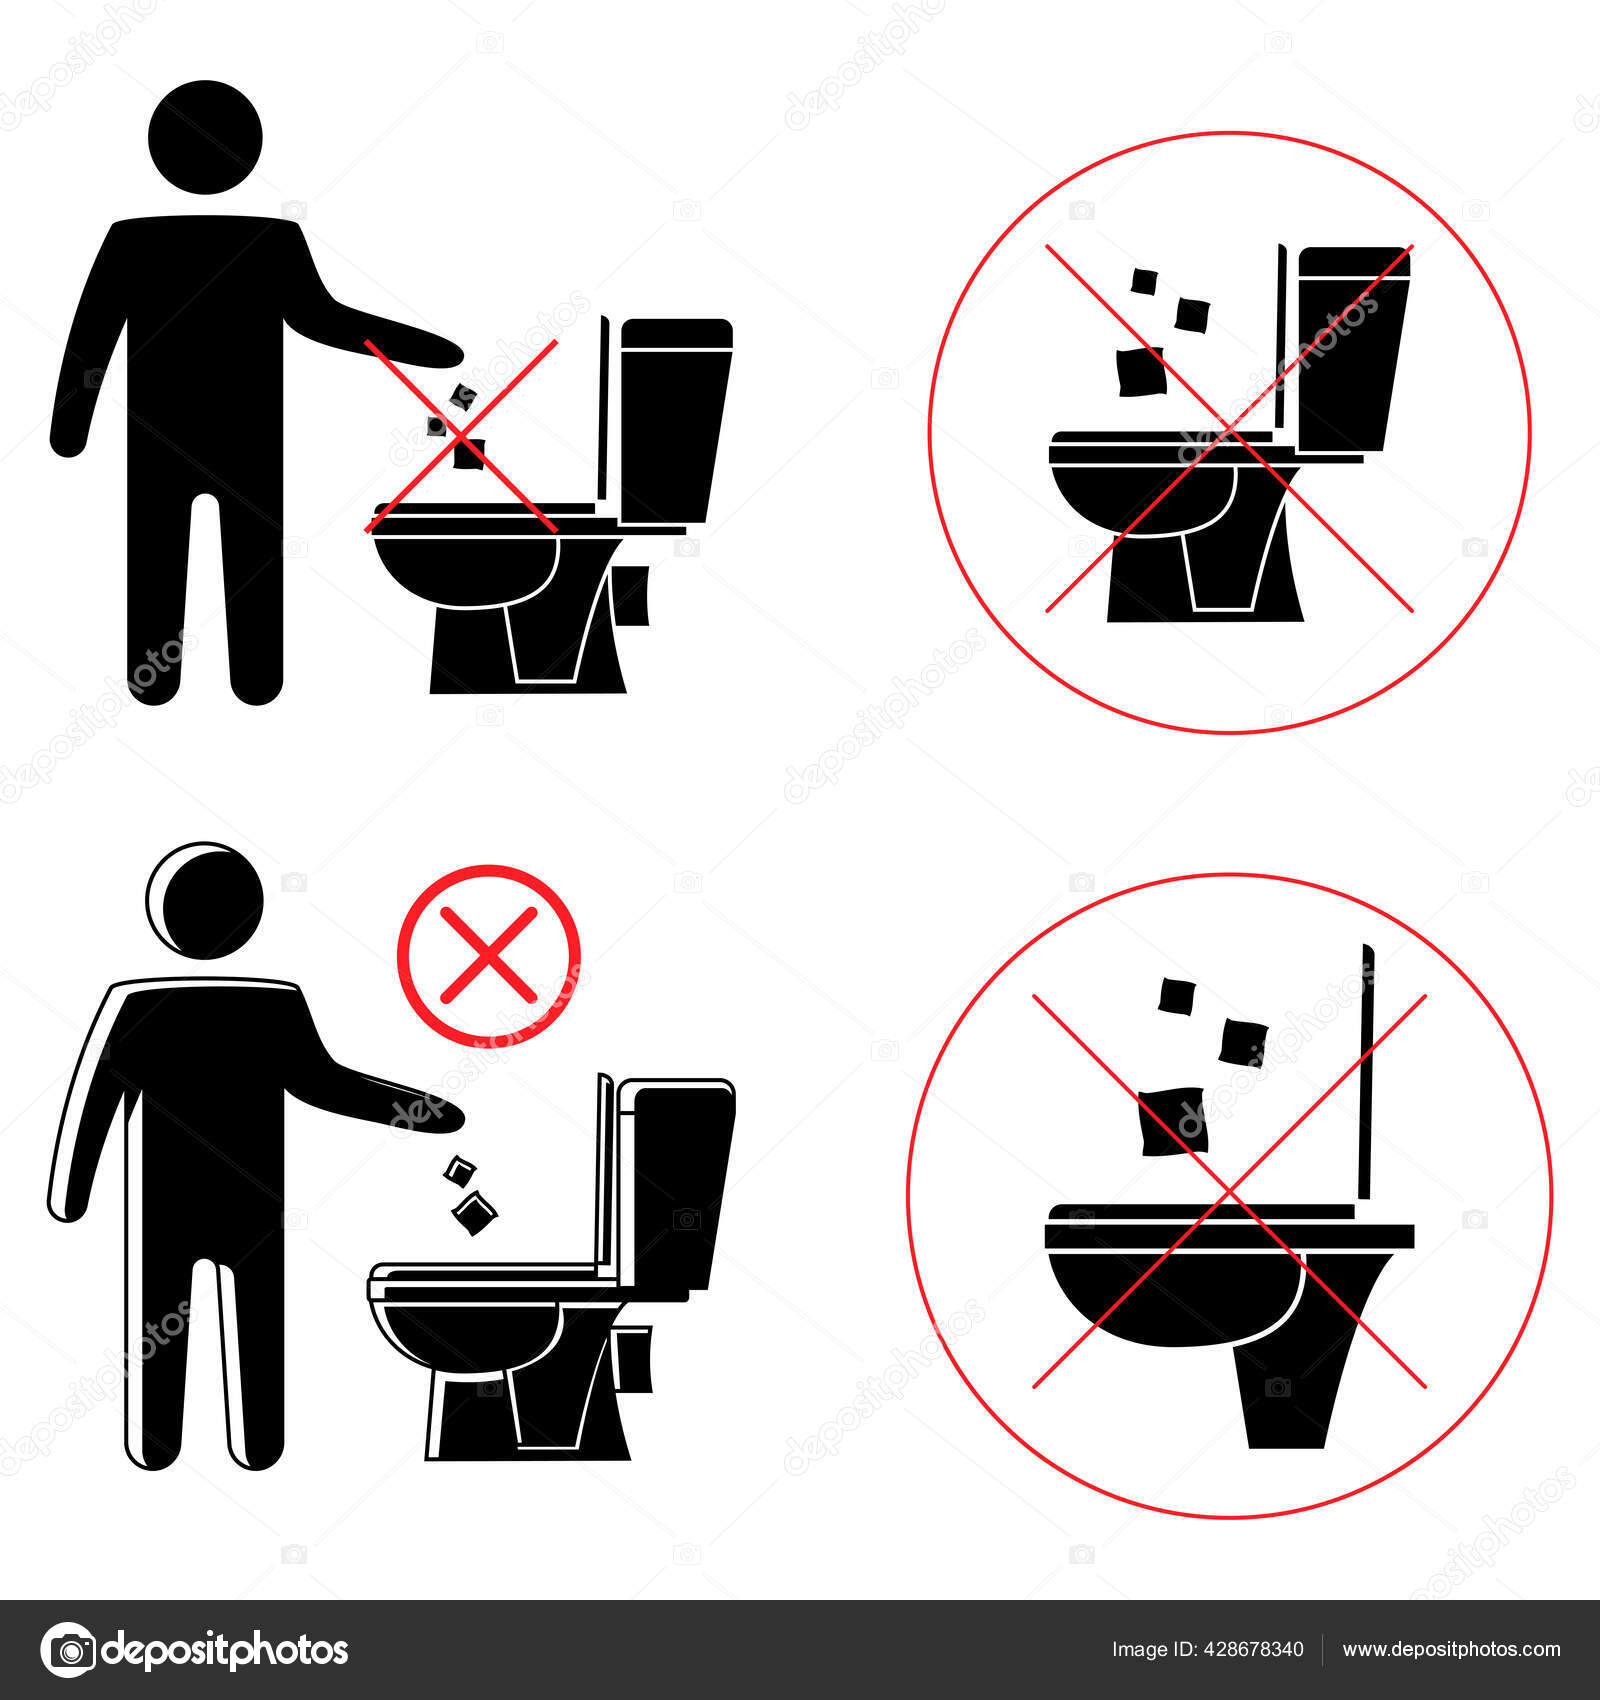 Aufkleber - Bitte keine Papierhandtücher in die Toilette Werfen!